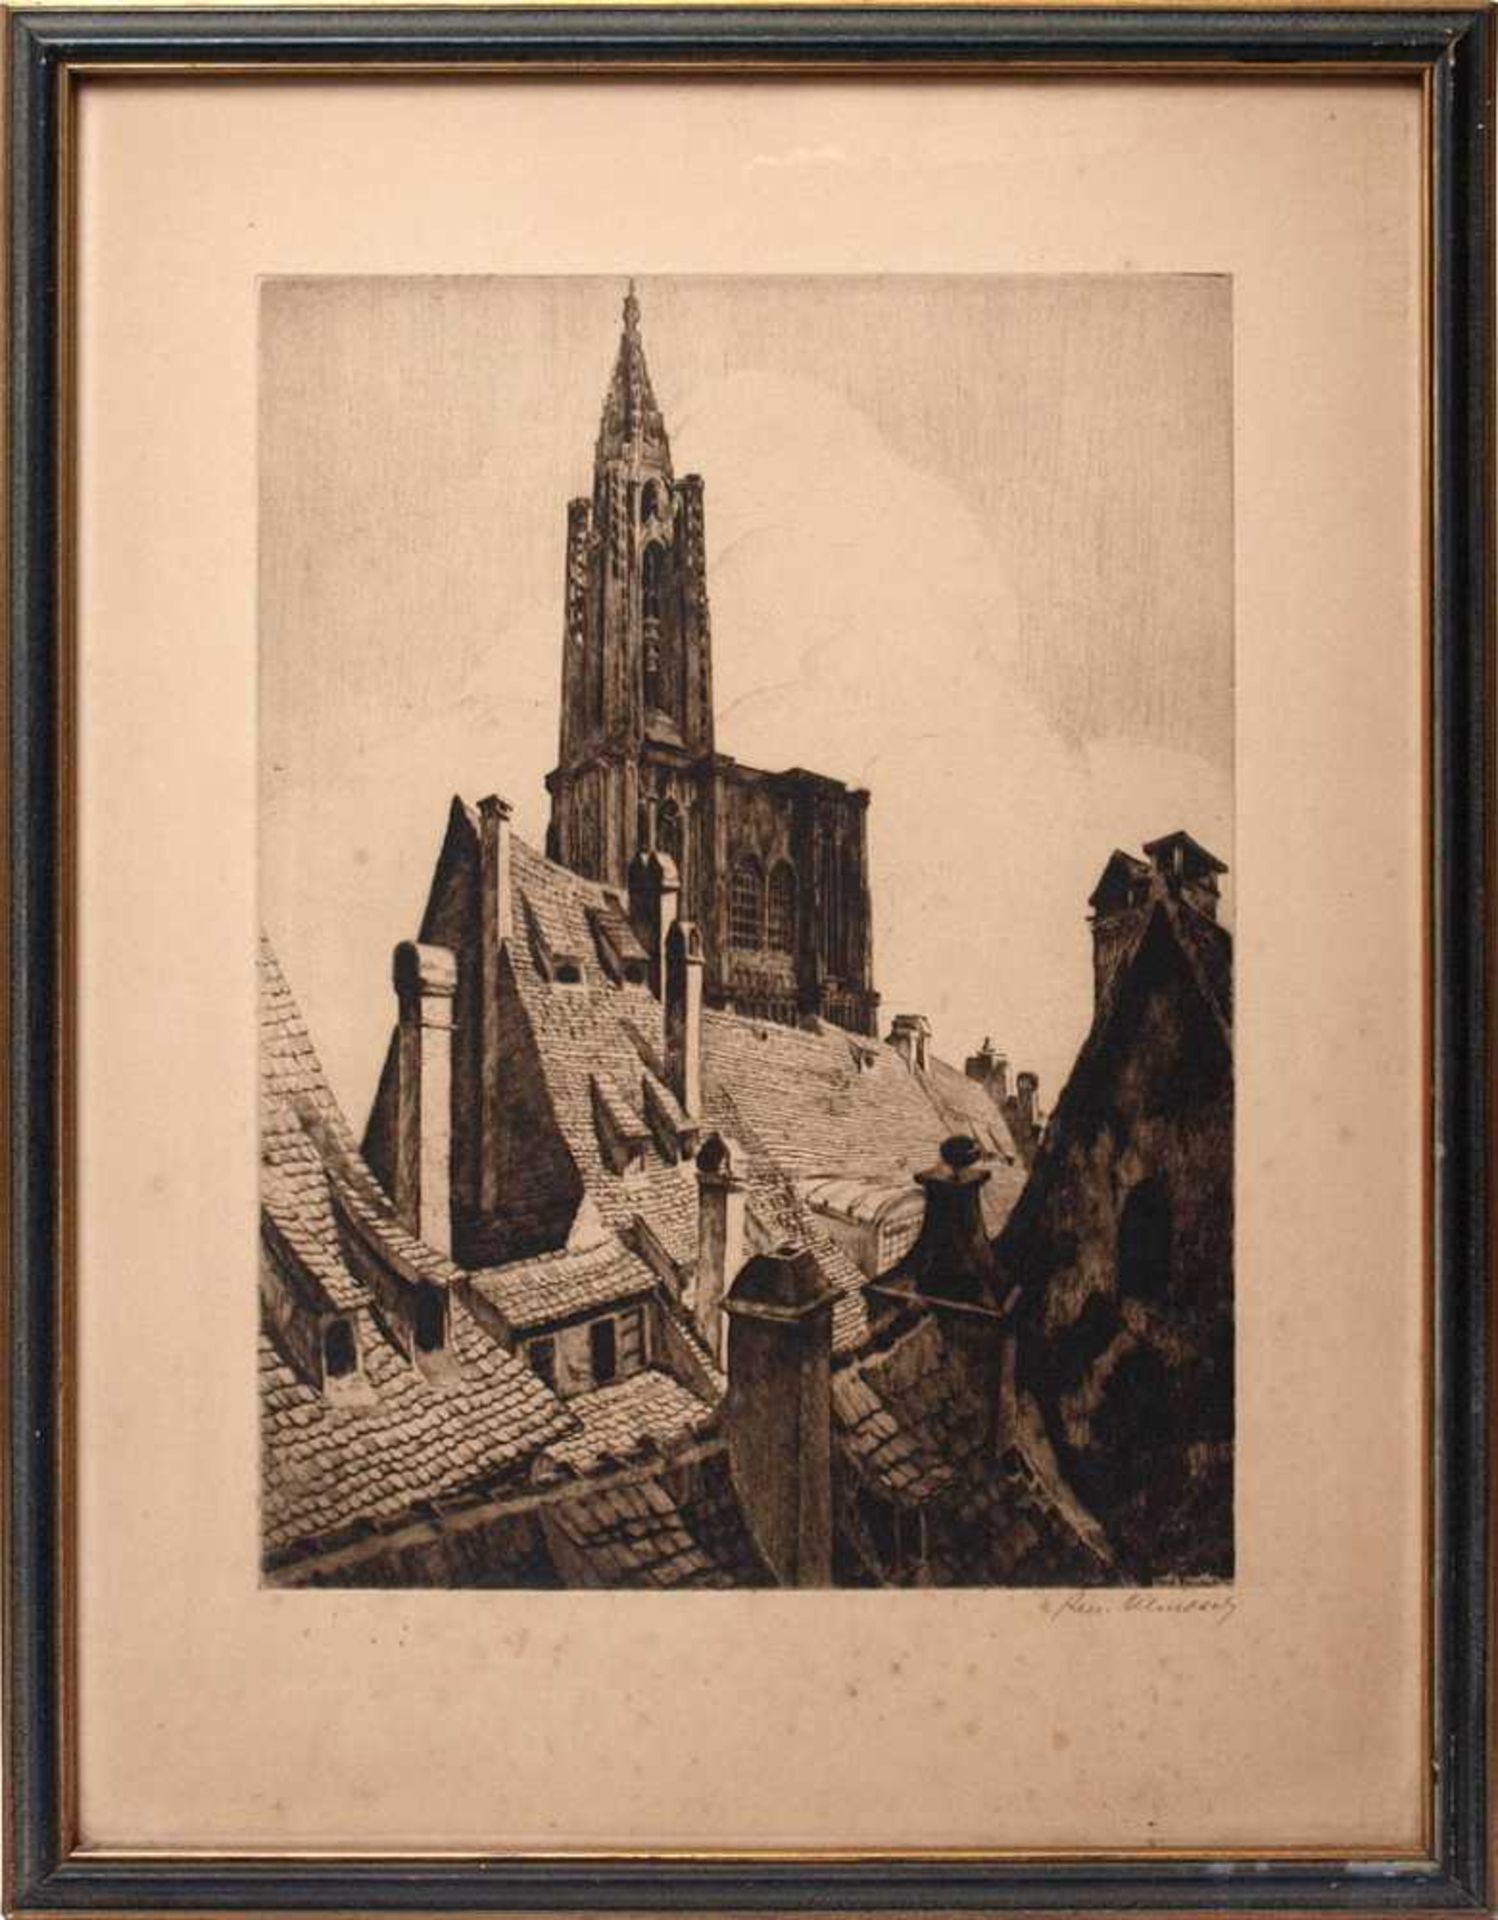 Allenbach, Rene, 1889 - 1958Dächerlandschaft in Straßburg mit den Türmen des Münsters. Radierung.